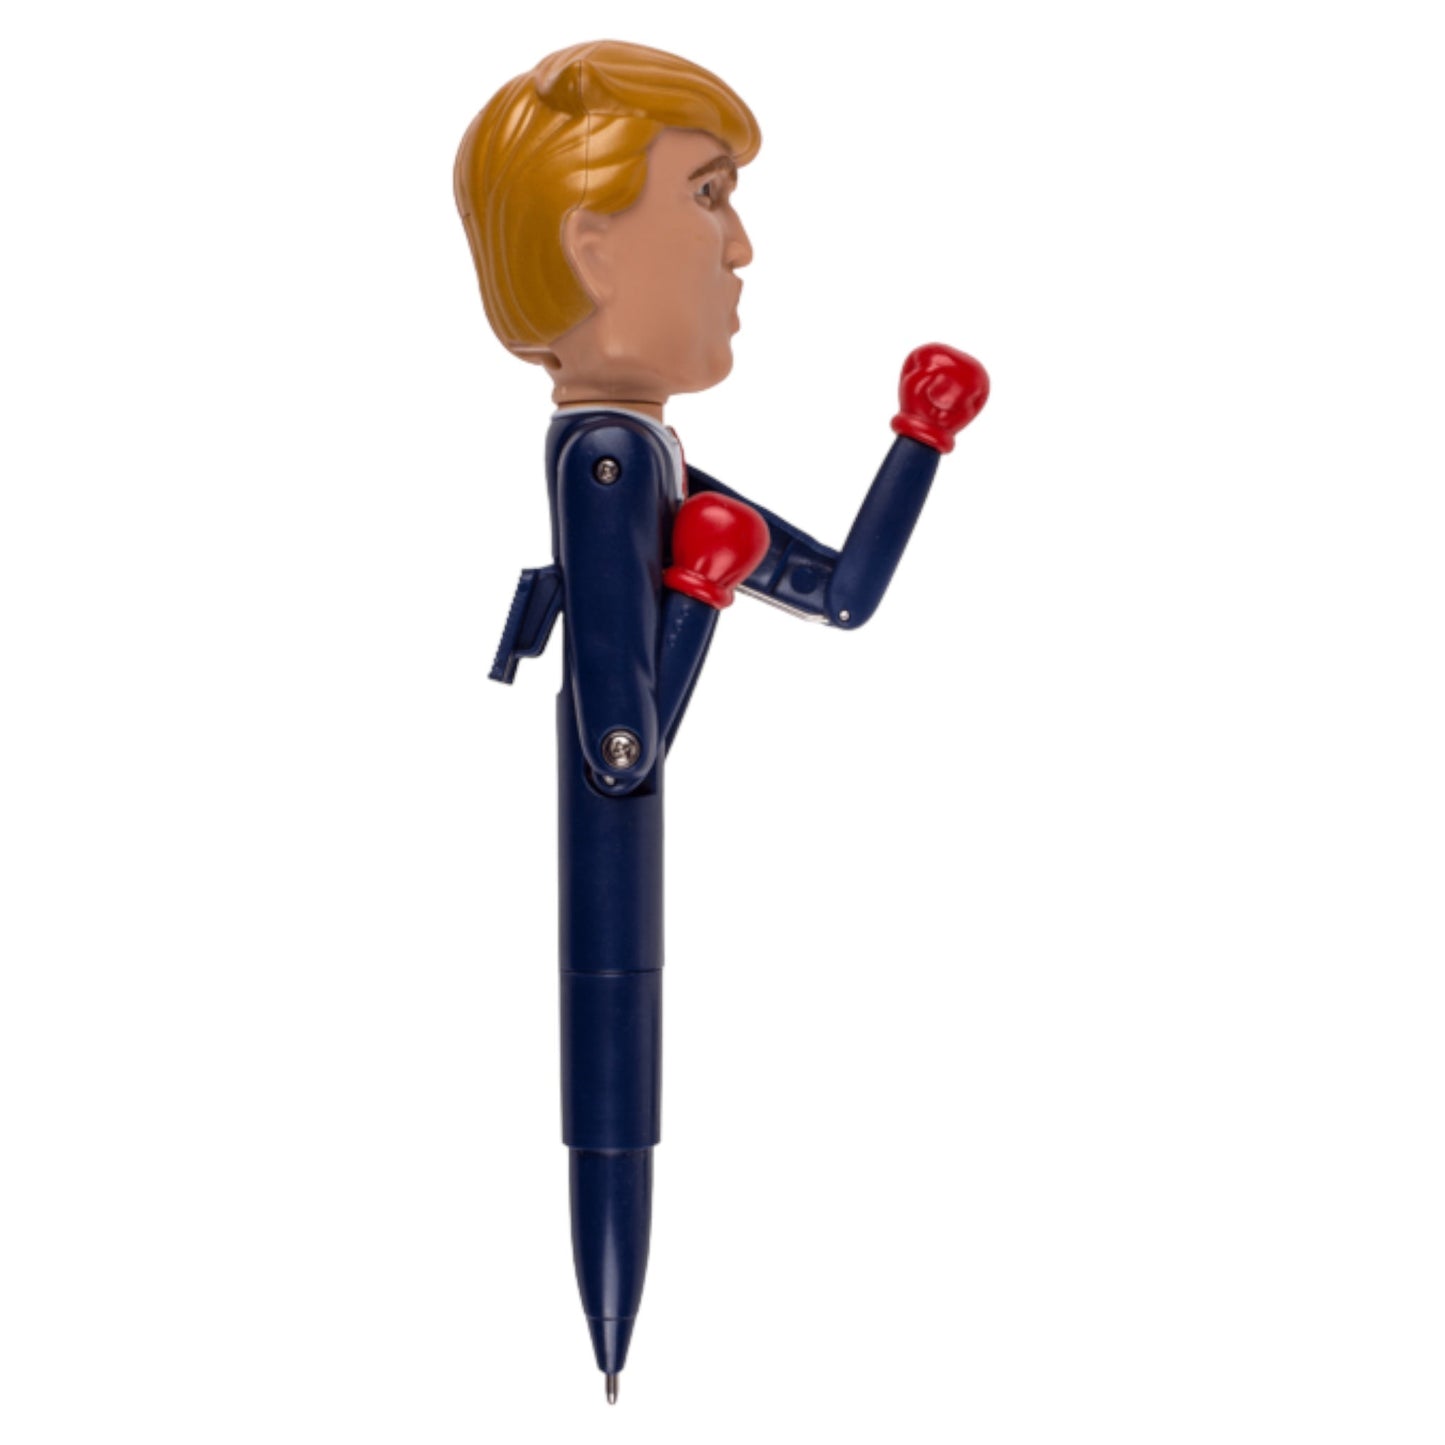 Donald Trump Boxing Pen - Uniek en Grappig Gadget voor Politieke Humor